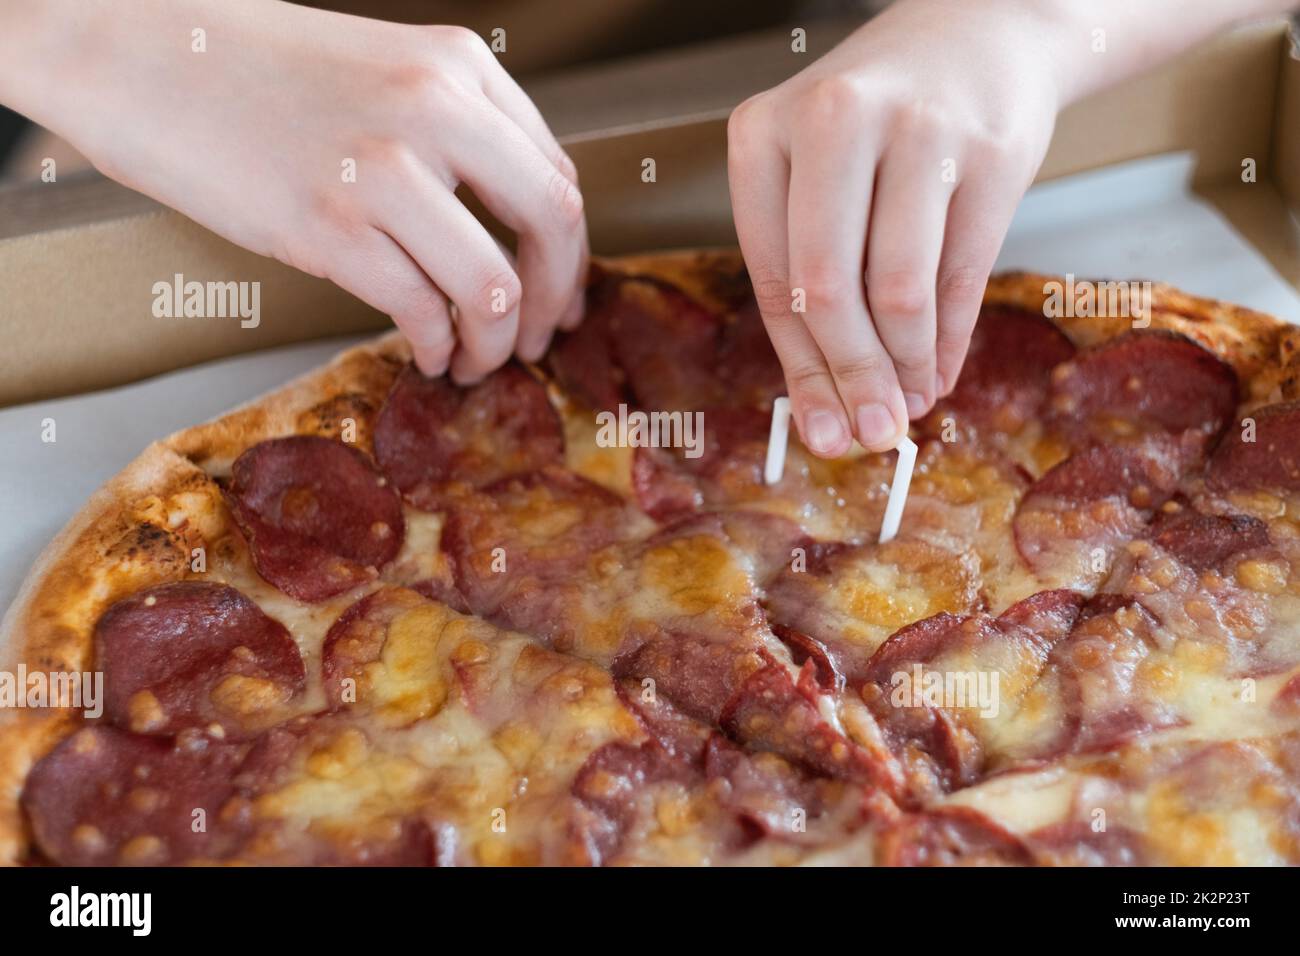 Gros plan de la main d'un homme prenant une tranche de pizza pepperoni. Pizza avec salami et fromage Banque D'Images